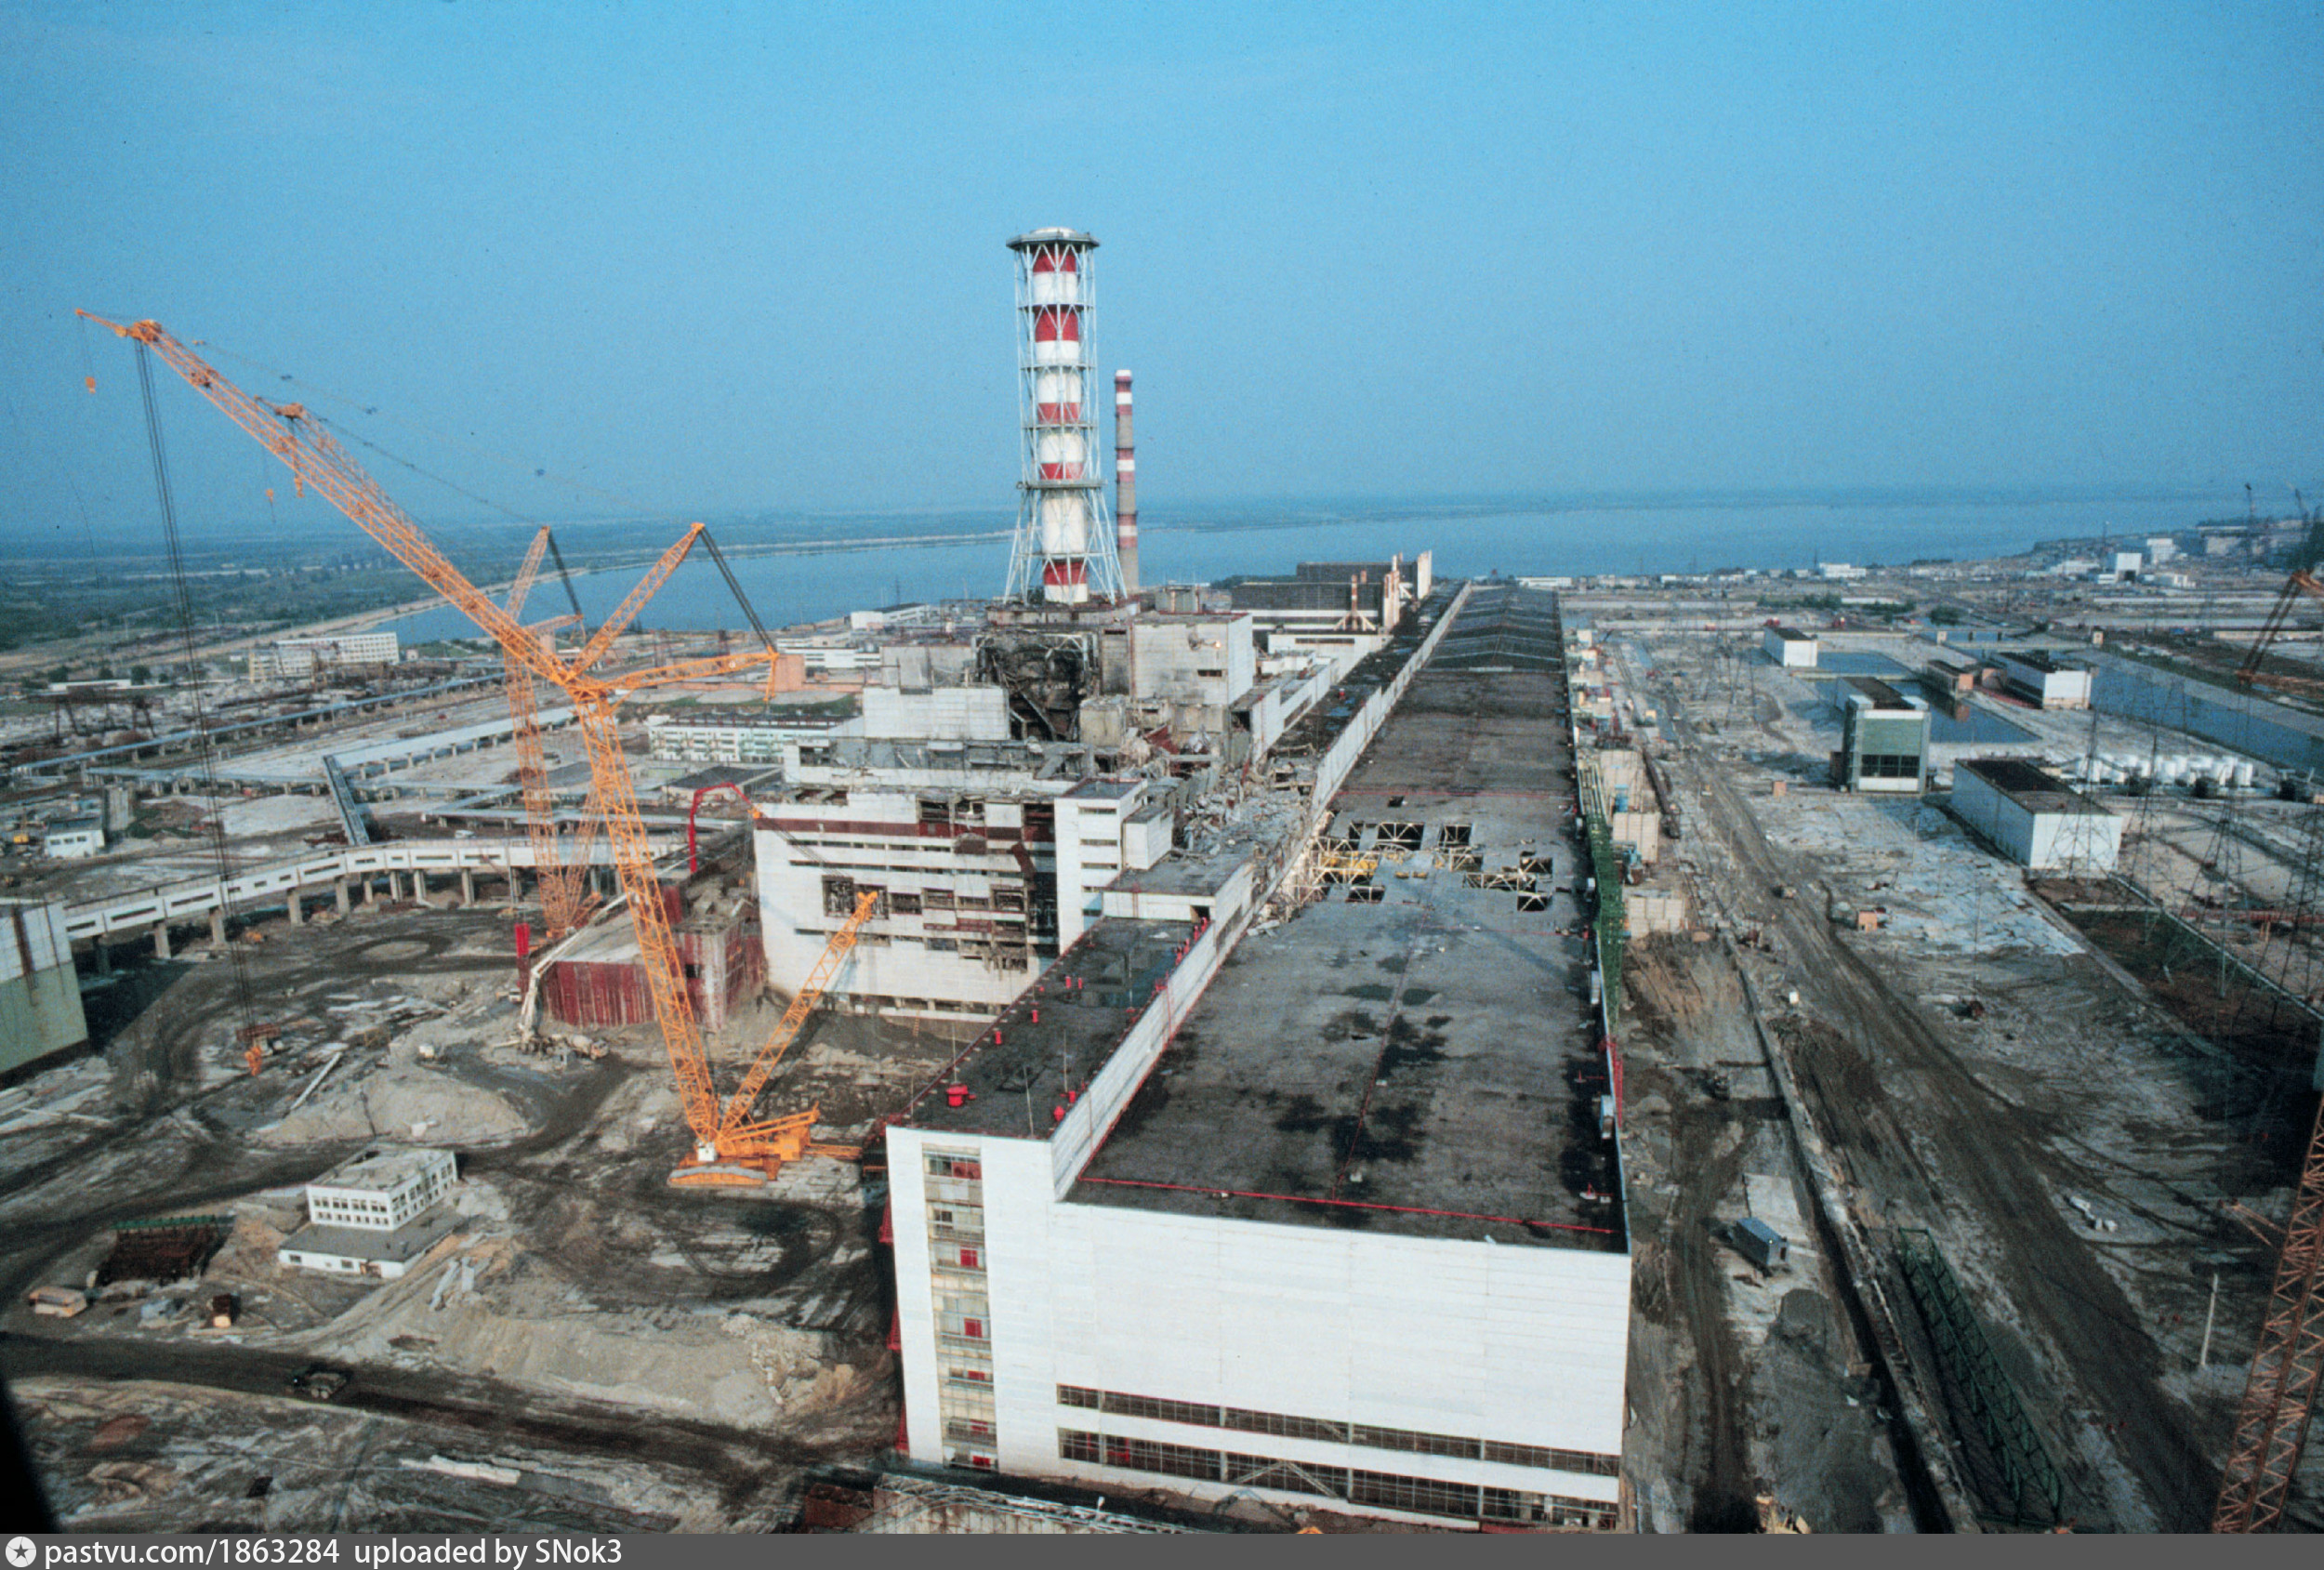 Ядерный взрыв аэс. Чернобыль 1986. АЭС Украины 1986. Чернобыльская АЭС 1986. Станция ЧАЭС Чернобыль.